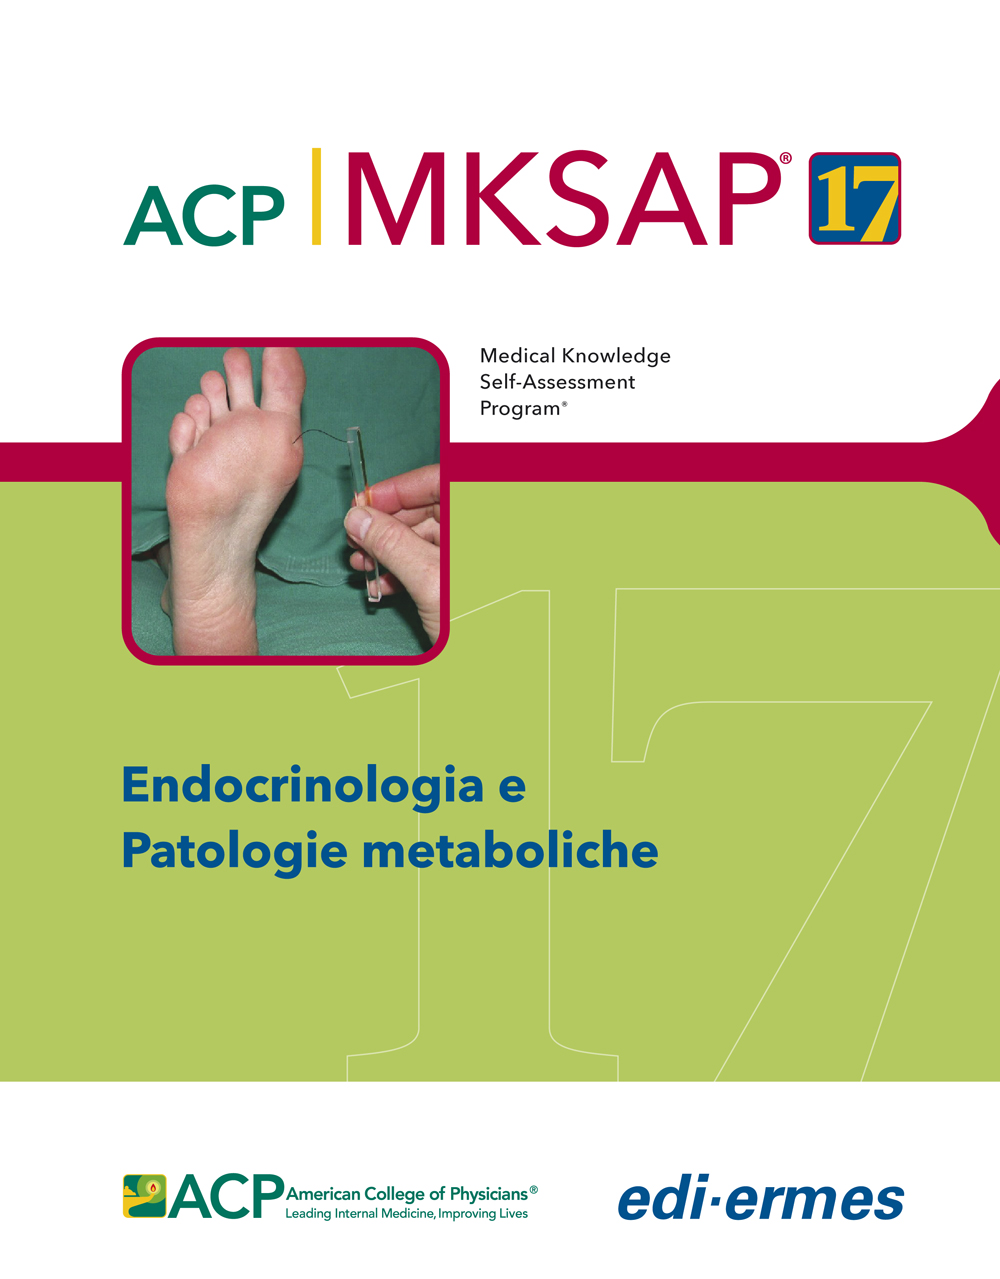 Endocrinologia e Patologie metaboliche